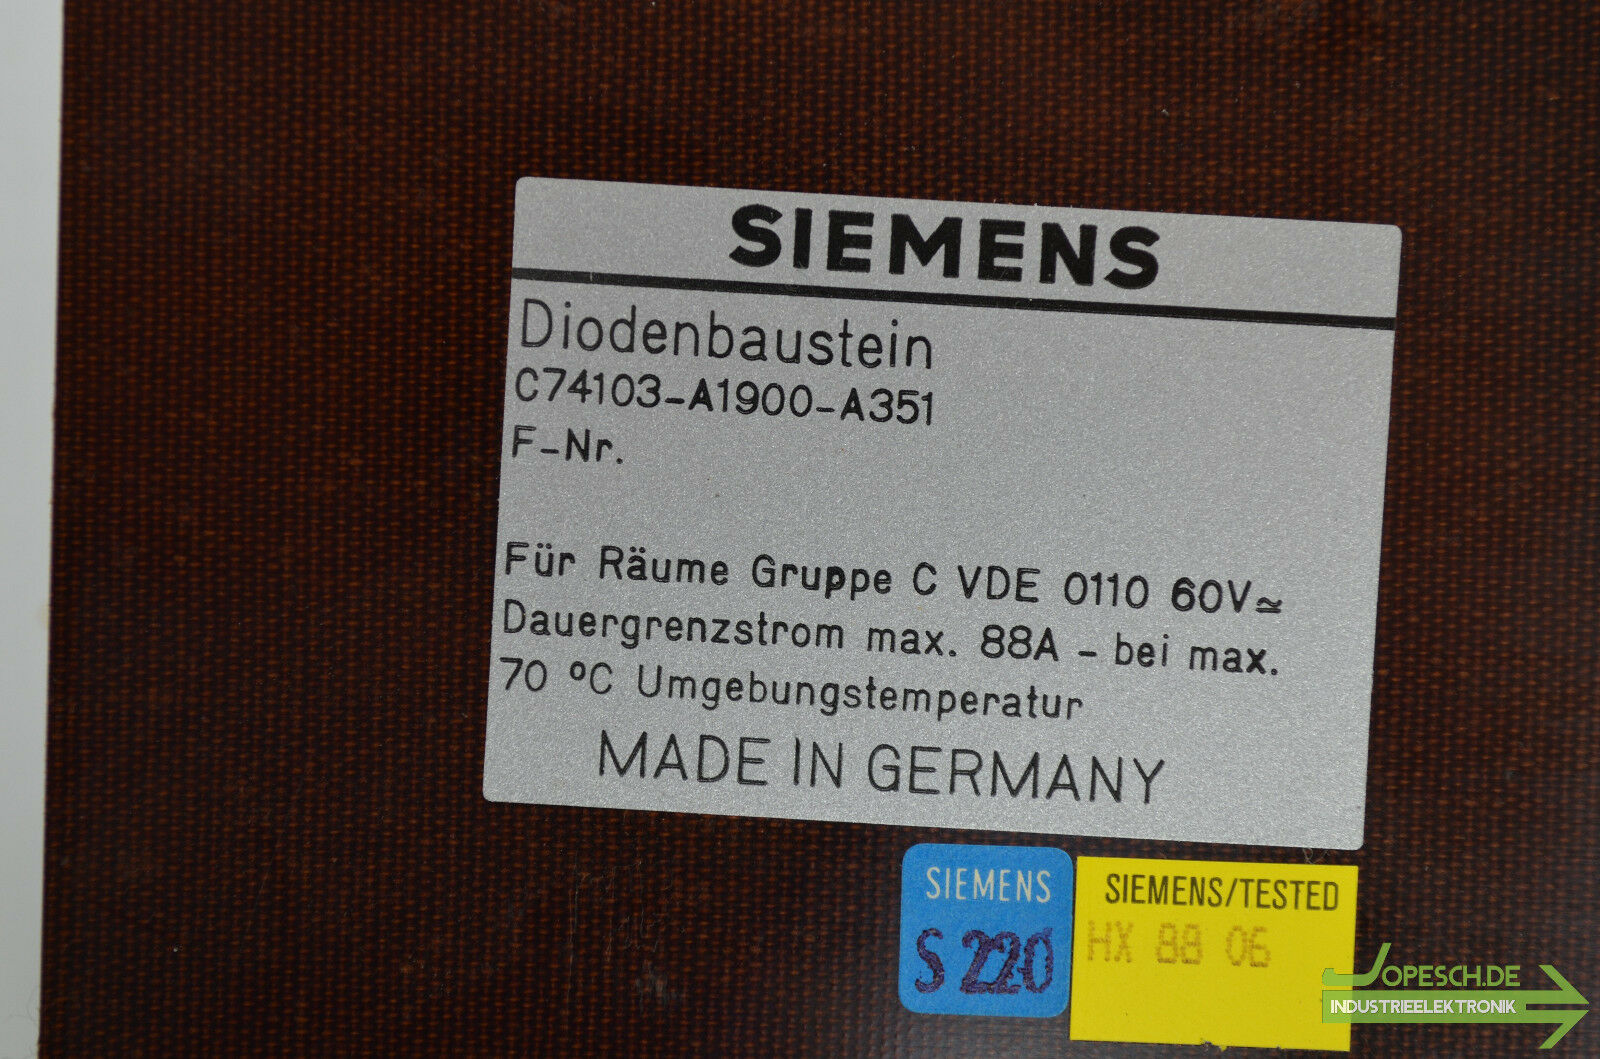 Siemens Diodenbaustein C74103-A1900-A351